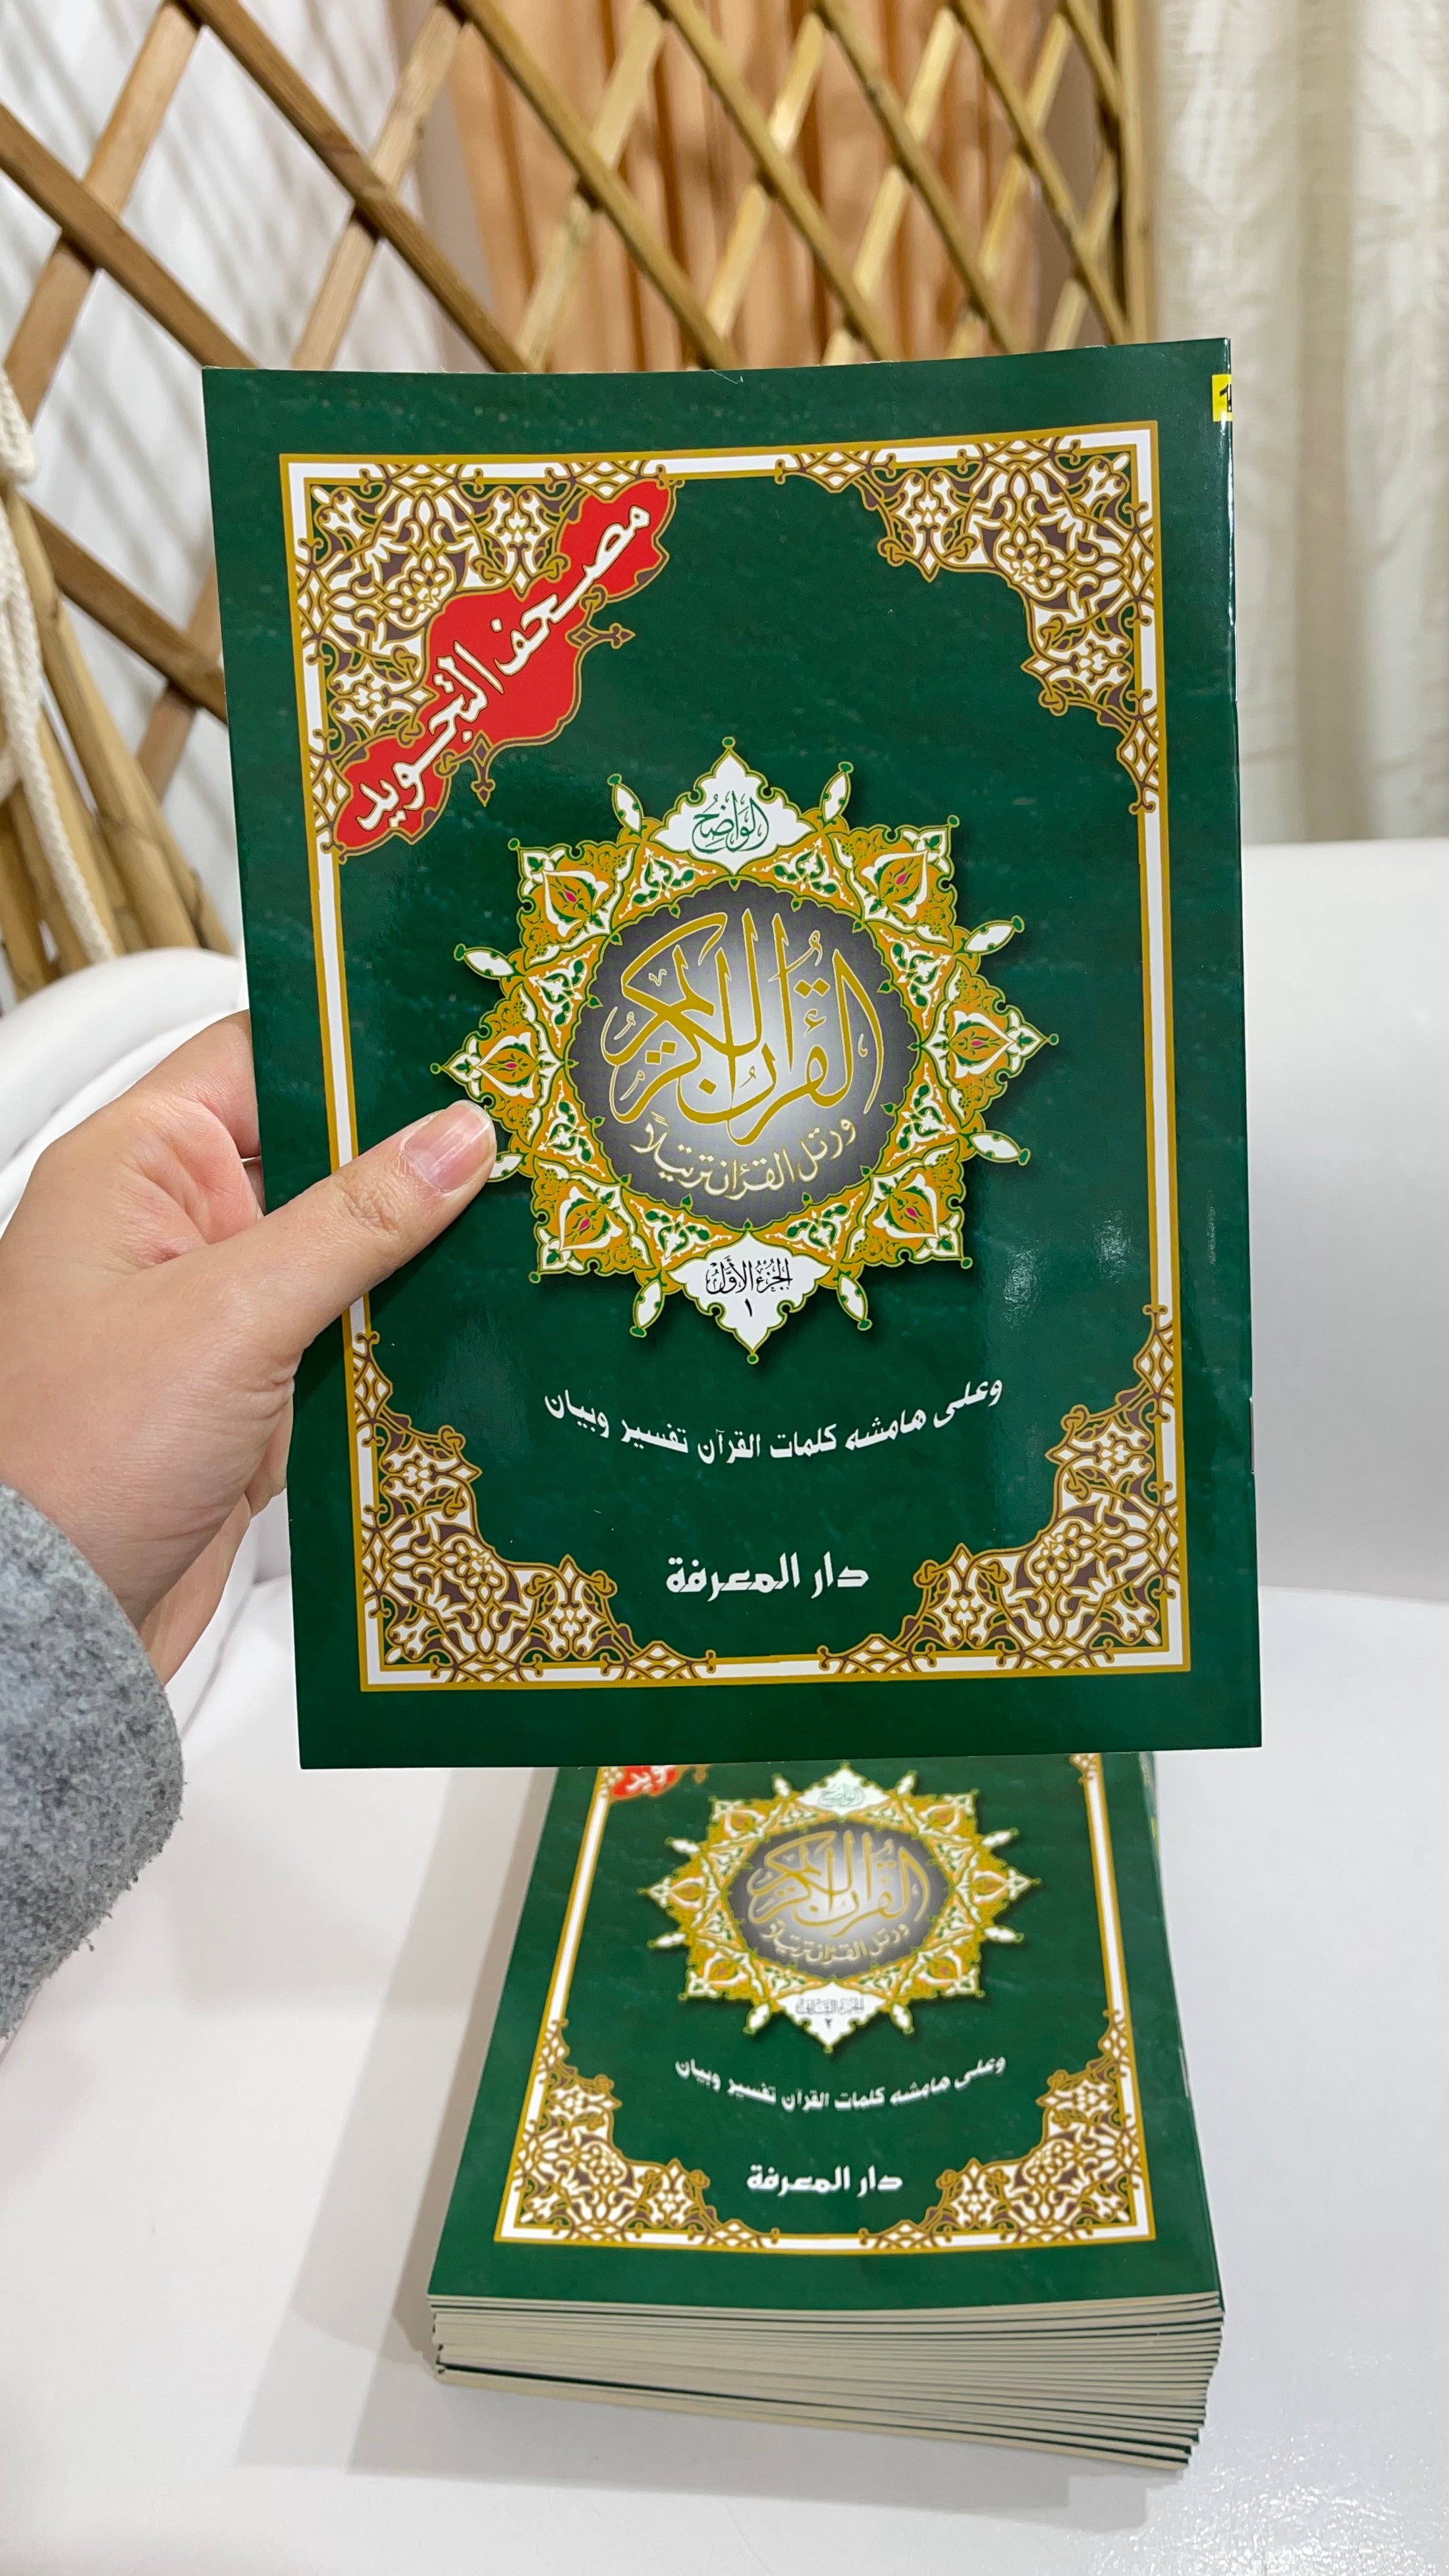 Corano tajwid khatma - hafs- Hijab Paradise - arabo - Corano è completo di tutte le 114 sure divise in 30 libricini